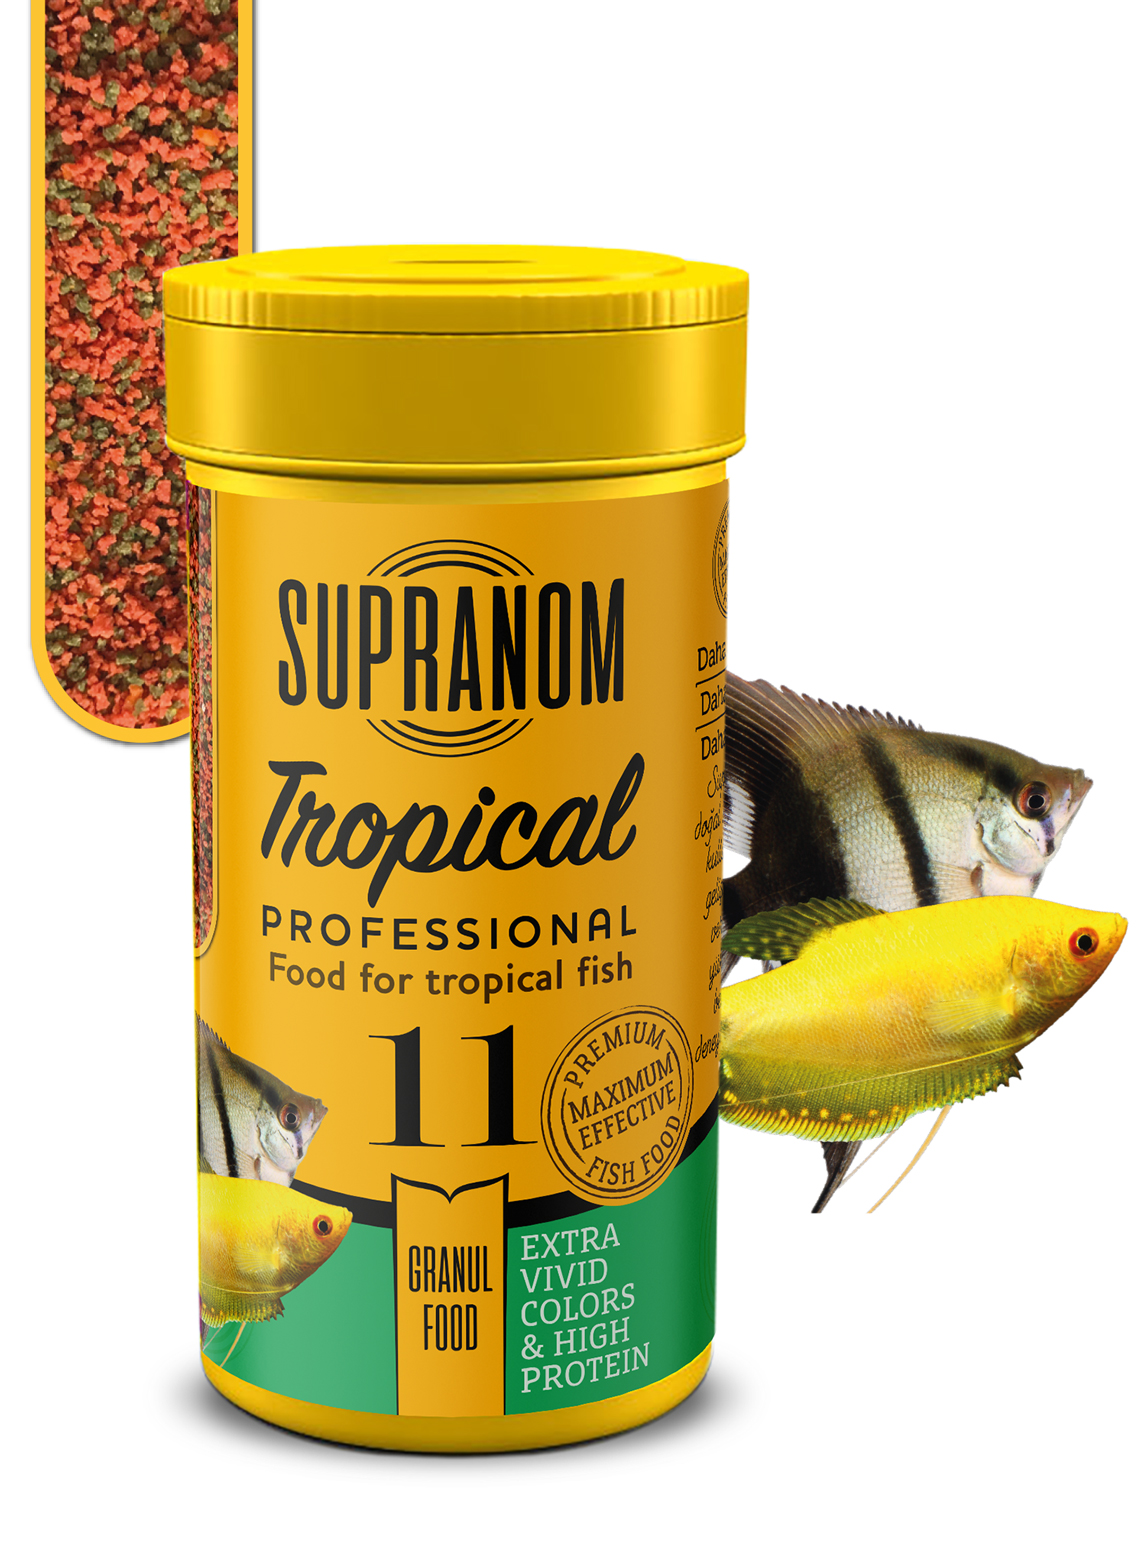 Supranom tropical balık yemi granul food 100ml (11)-1